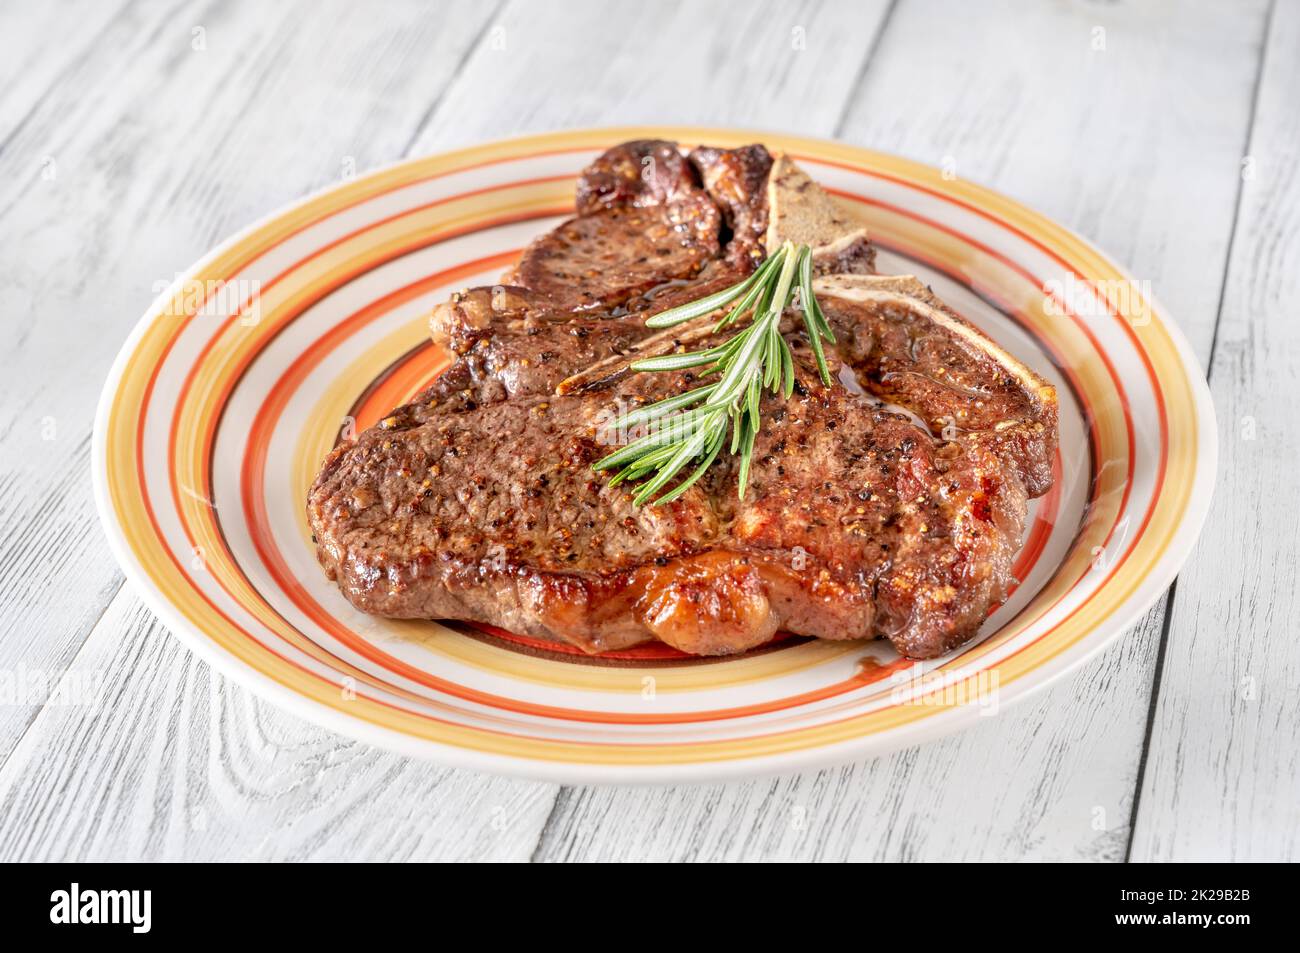 Pan-fried T-bone steak with fresh rosemary Stock Photo